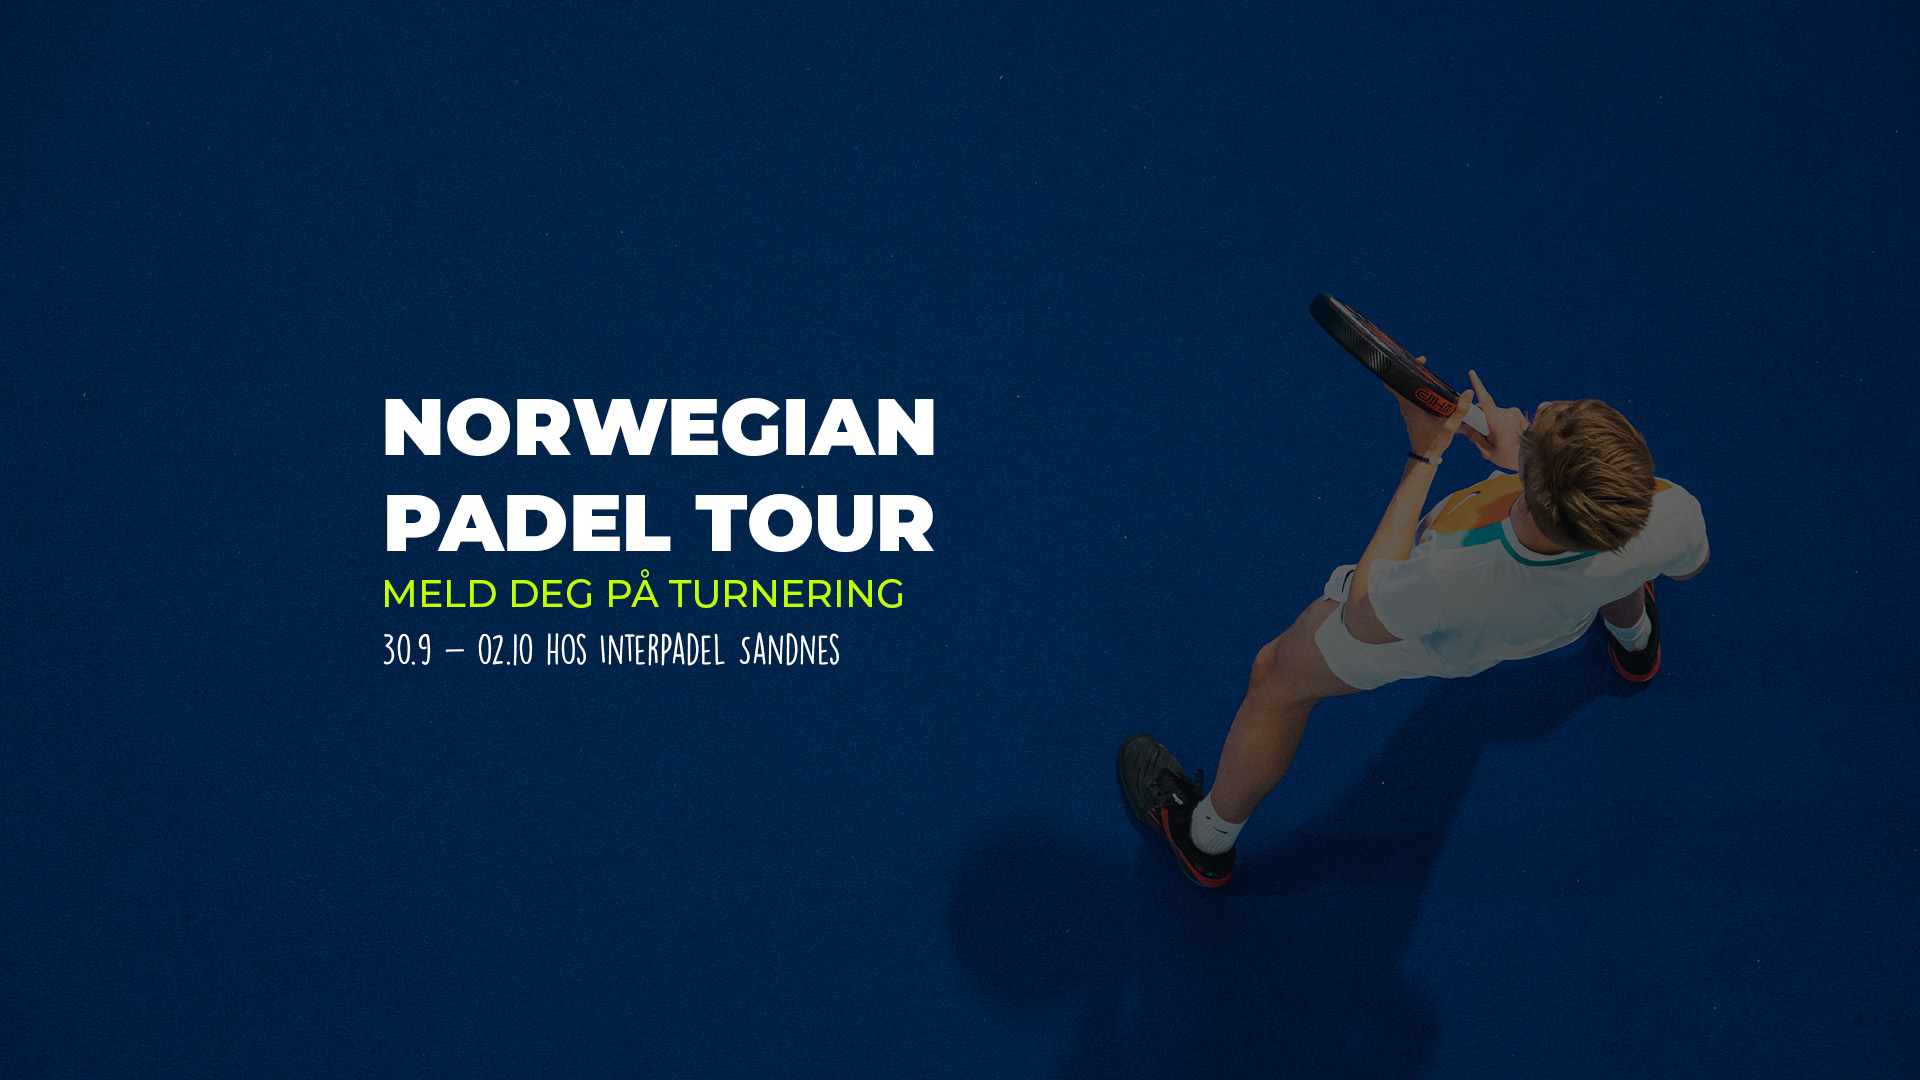 Meld deg på Turnering i samarbeid med Norwegian Padel Tour